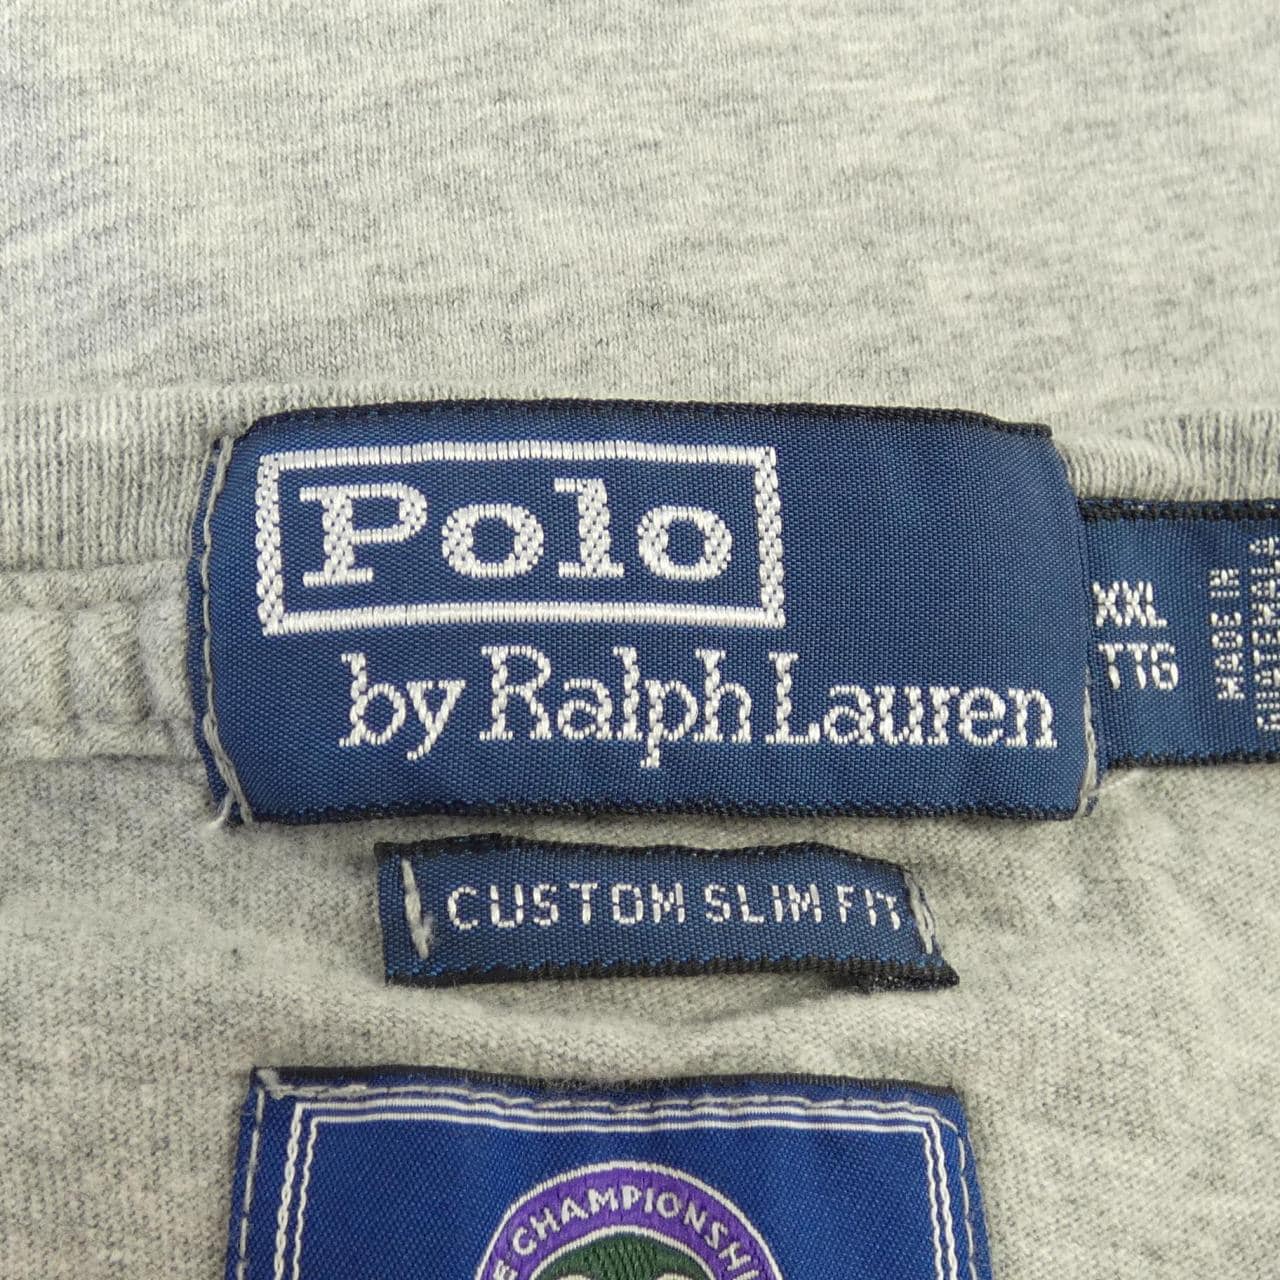 ポロラルフローレン POLO RALPH LAUREN Tシャツ